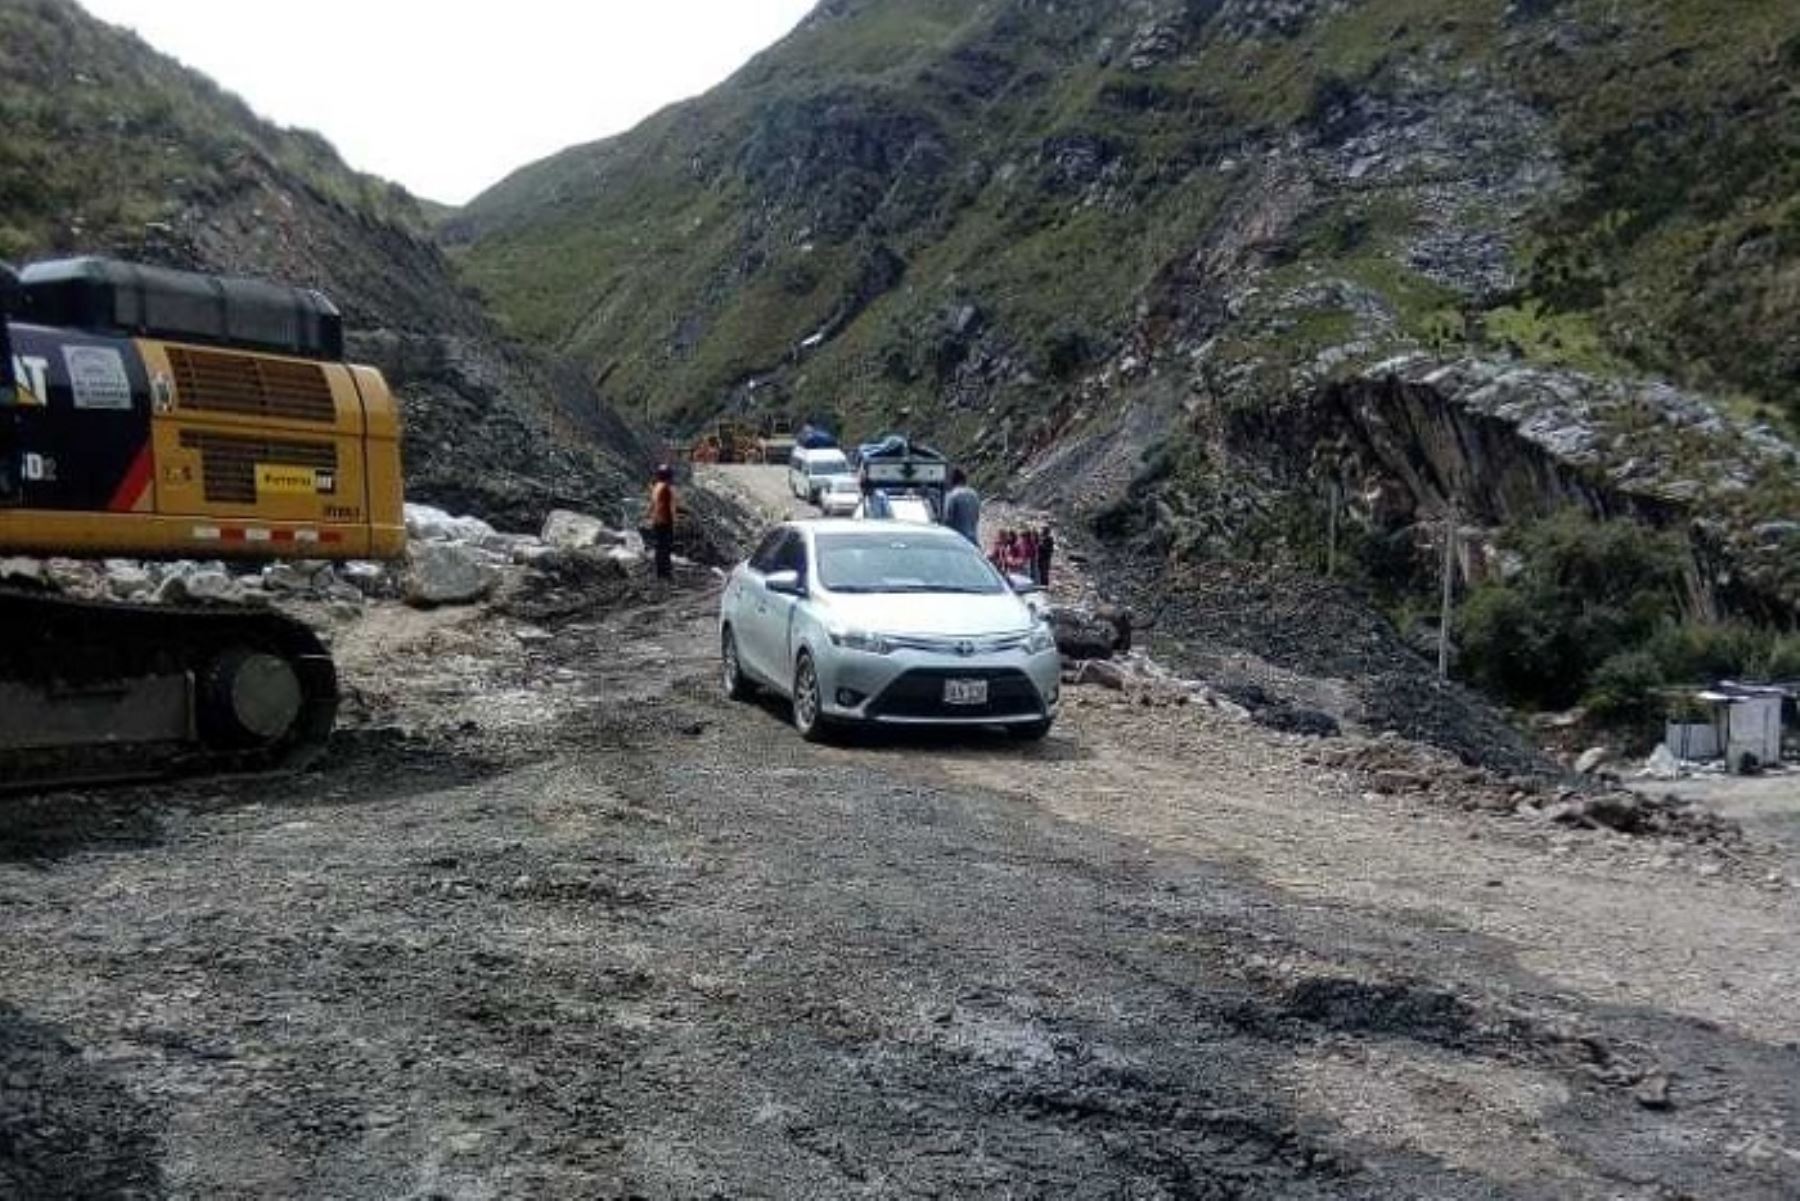 Ya están habilitados para el transporte y pase normal de vehículos tres tramos de vías de acceso a Huallanca, en la provincia de Bolognesi, región Áncash, que habían sido dañados por lluvias intensas, informó el Centro de Operaciones de Emergencia Regional (COER) de Áncash.